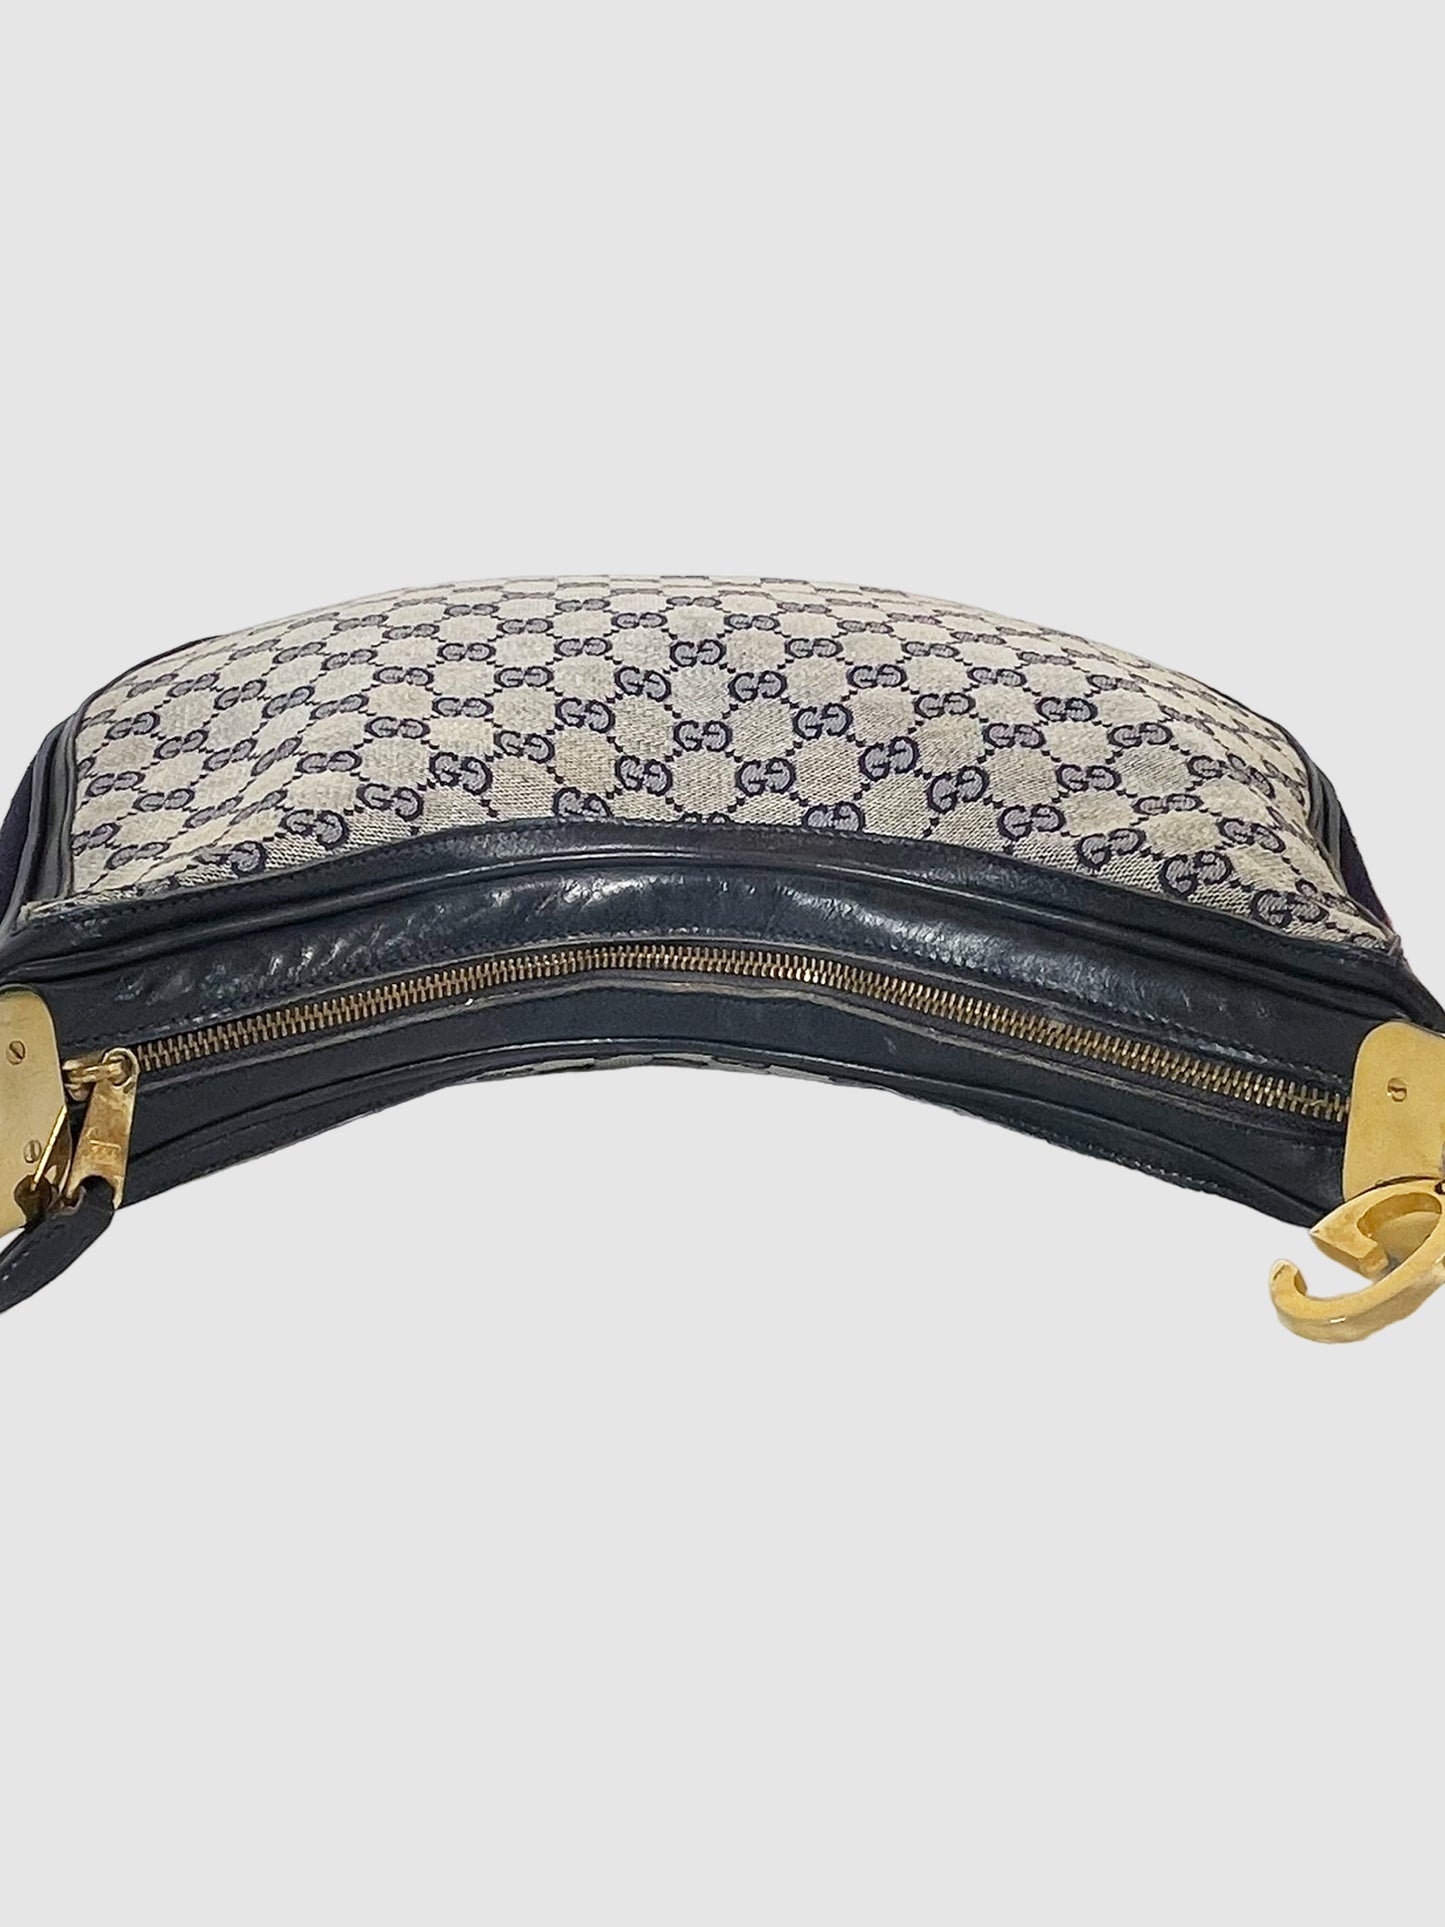 Gucci GG Supreme Attache Shoulder Bag